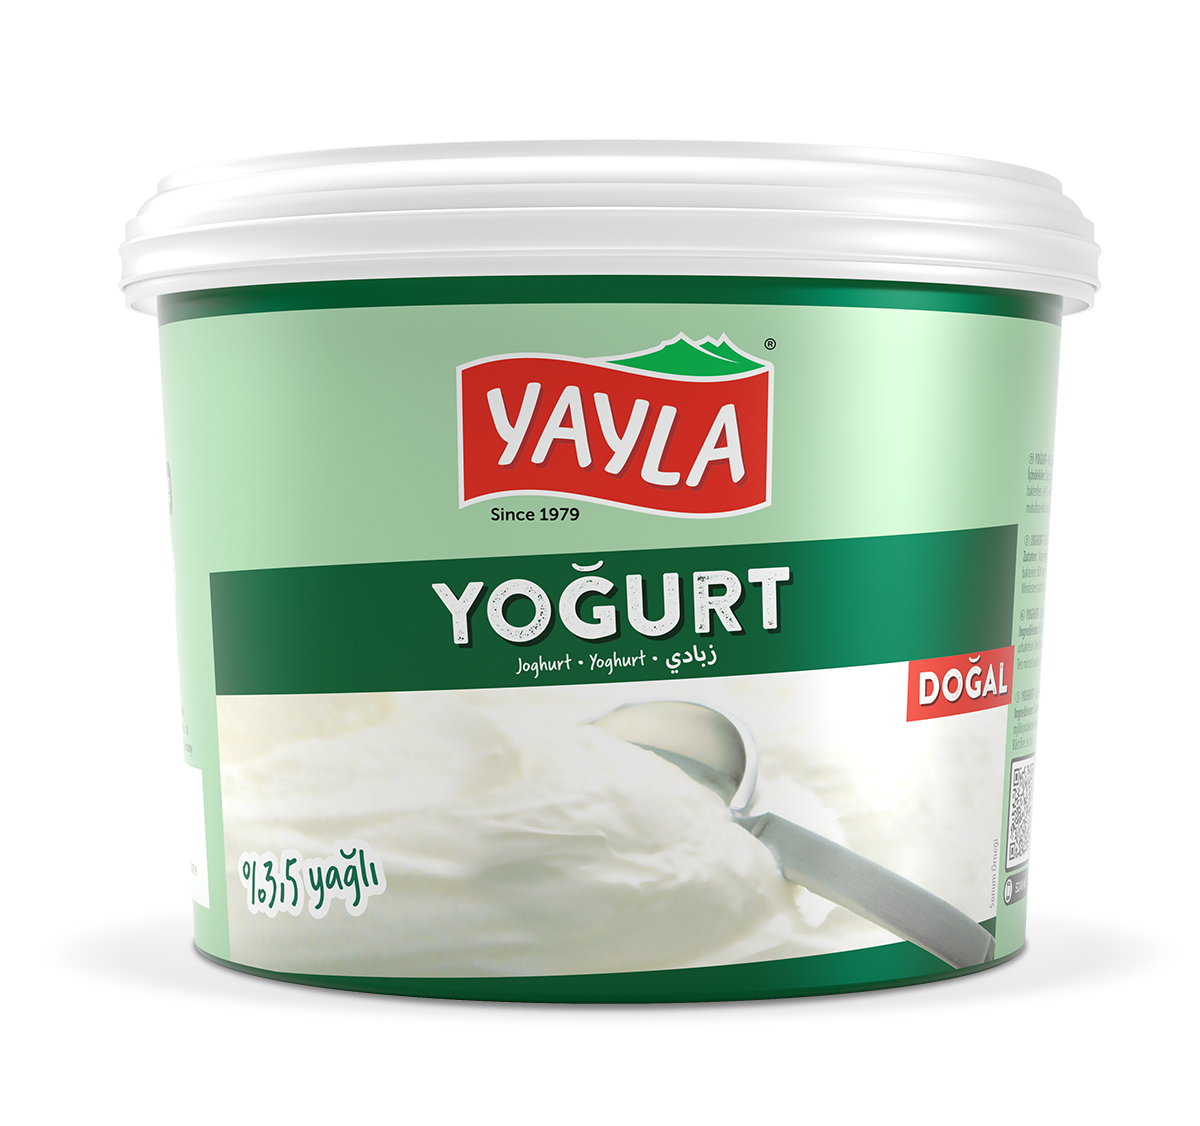 Yoghurt (3,5% fat)